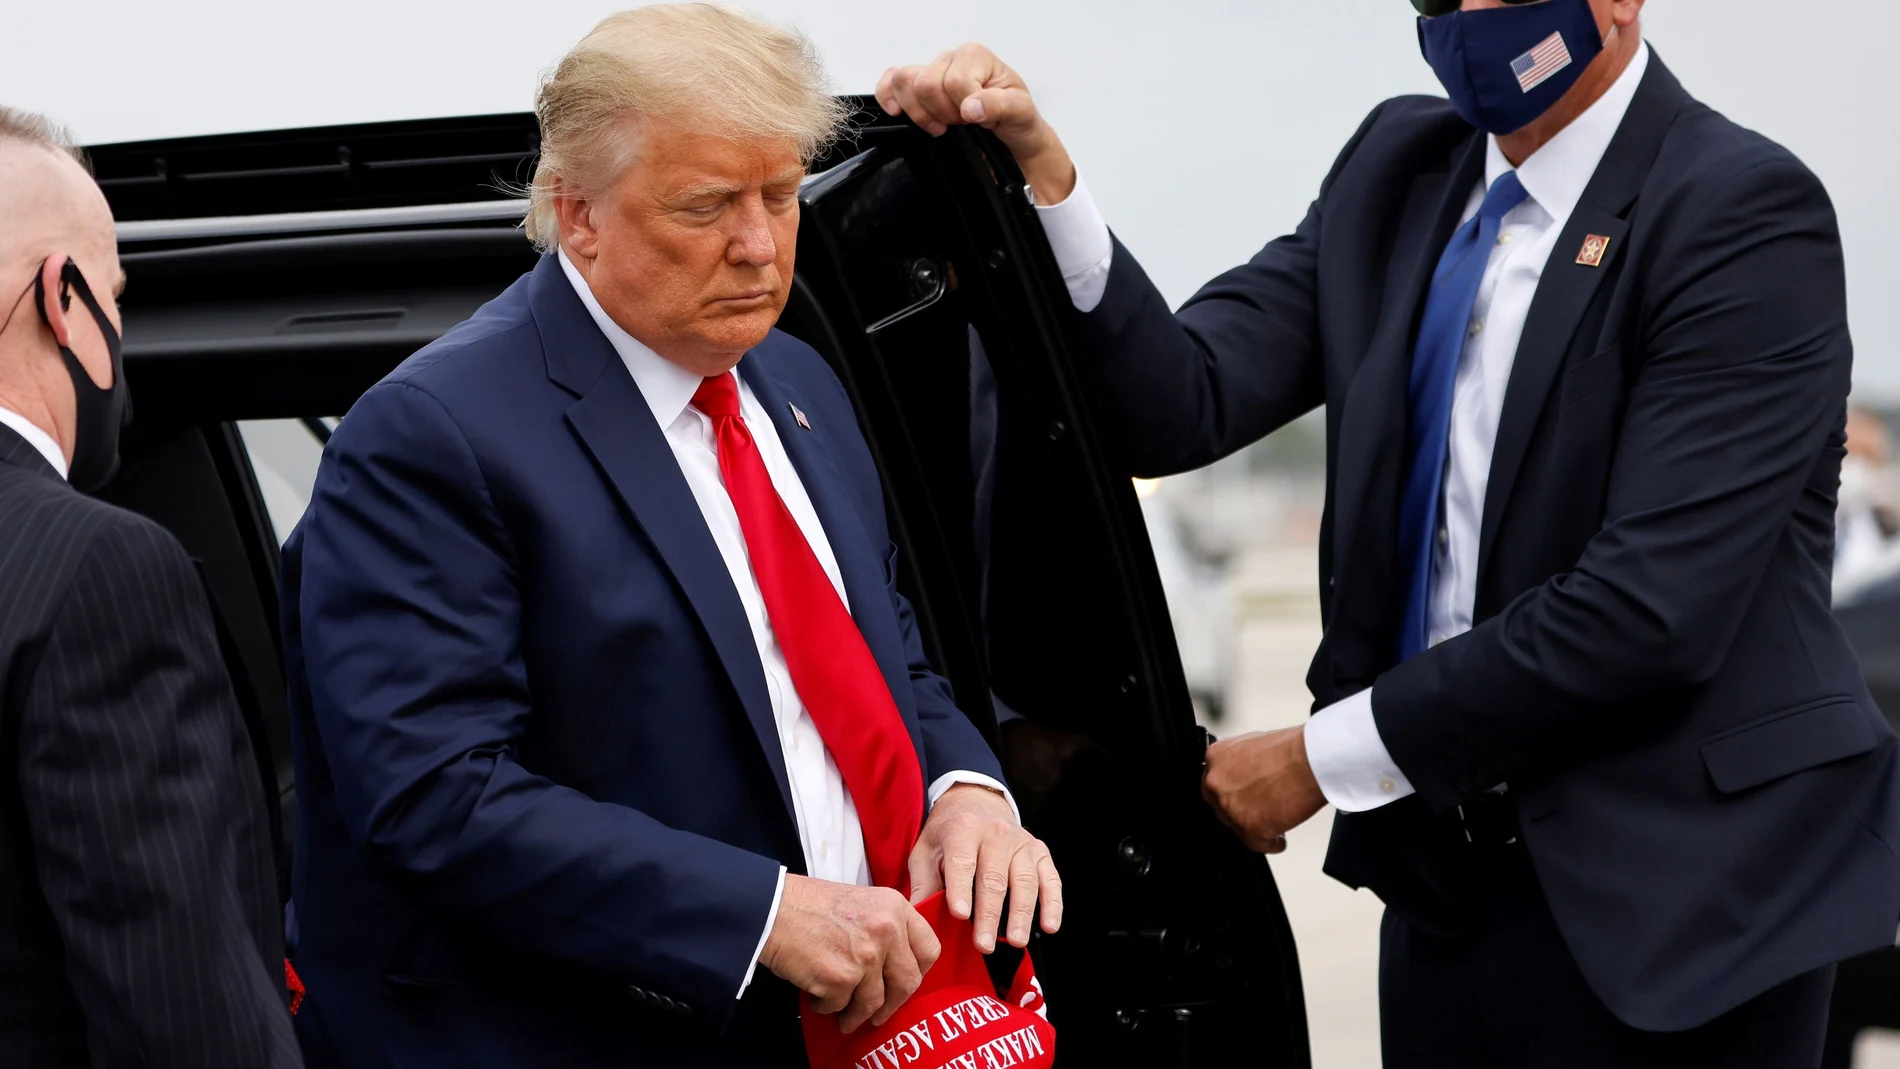 Donald Trump, con su inseparable gorra de "Make America Great Again", llega al aeropuerto de Miami el pasado 2 de noviembre